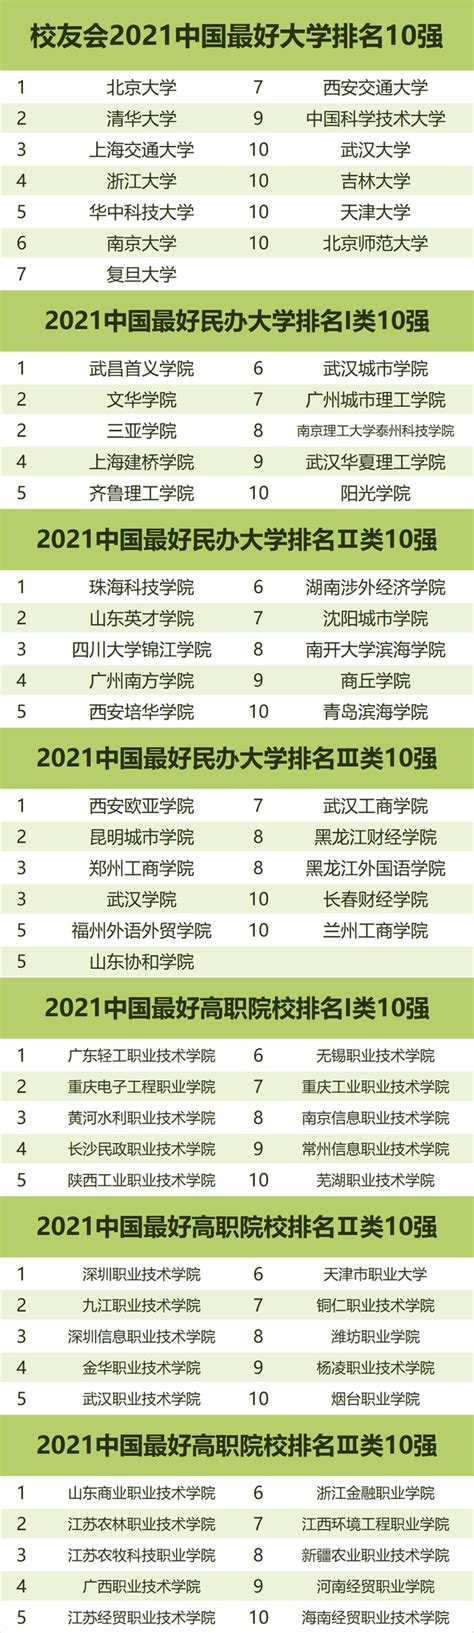 【中国最好的大学排名】2021中国最好大学排名发布：北大超清华，华科超复旦，中科大第9